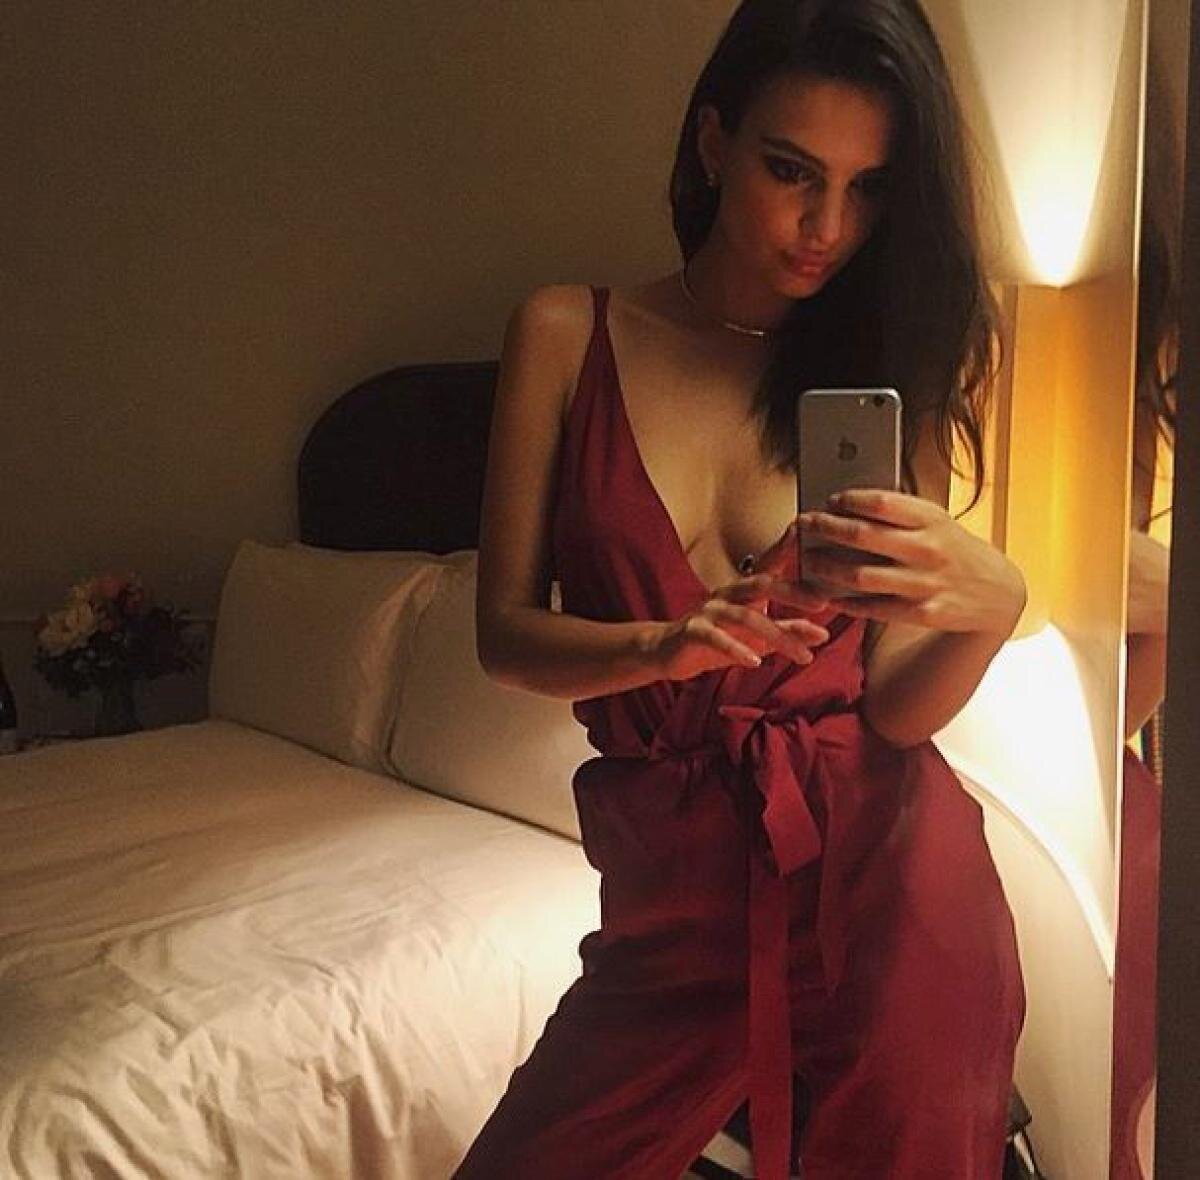 FOTO Nudul care provoacă » Emily Ratajkowski își dezvăluie complet formele pe Instagram: iată ”sânii cei mai frumoși din lume”